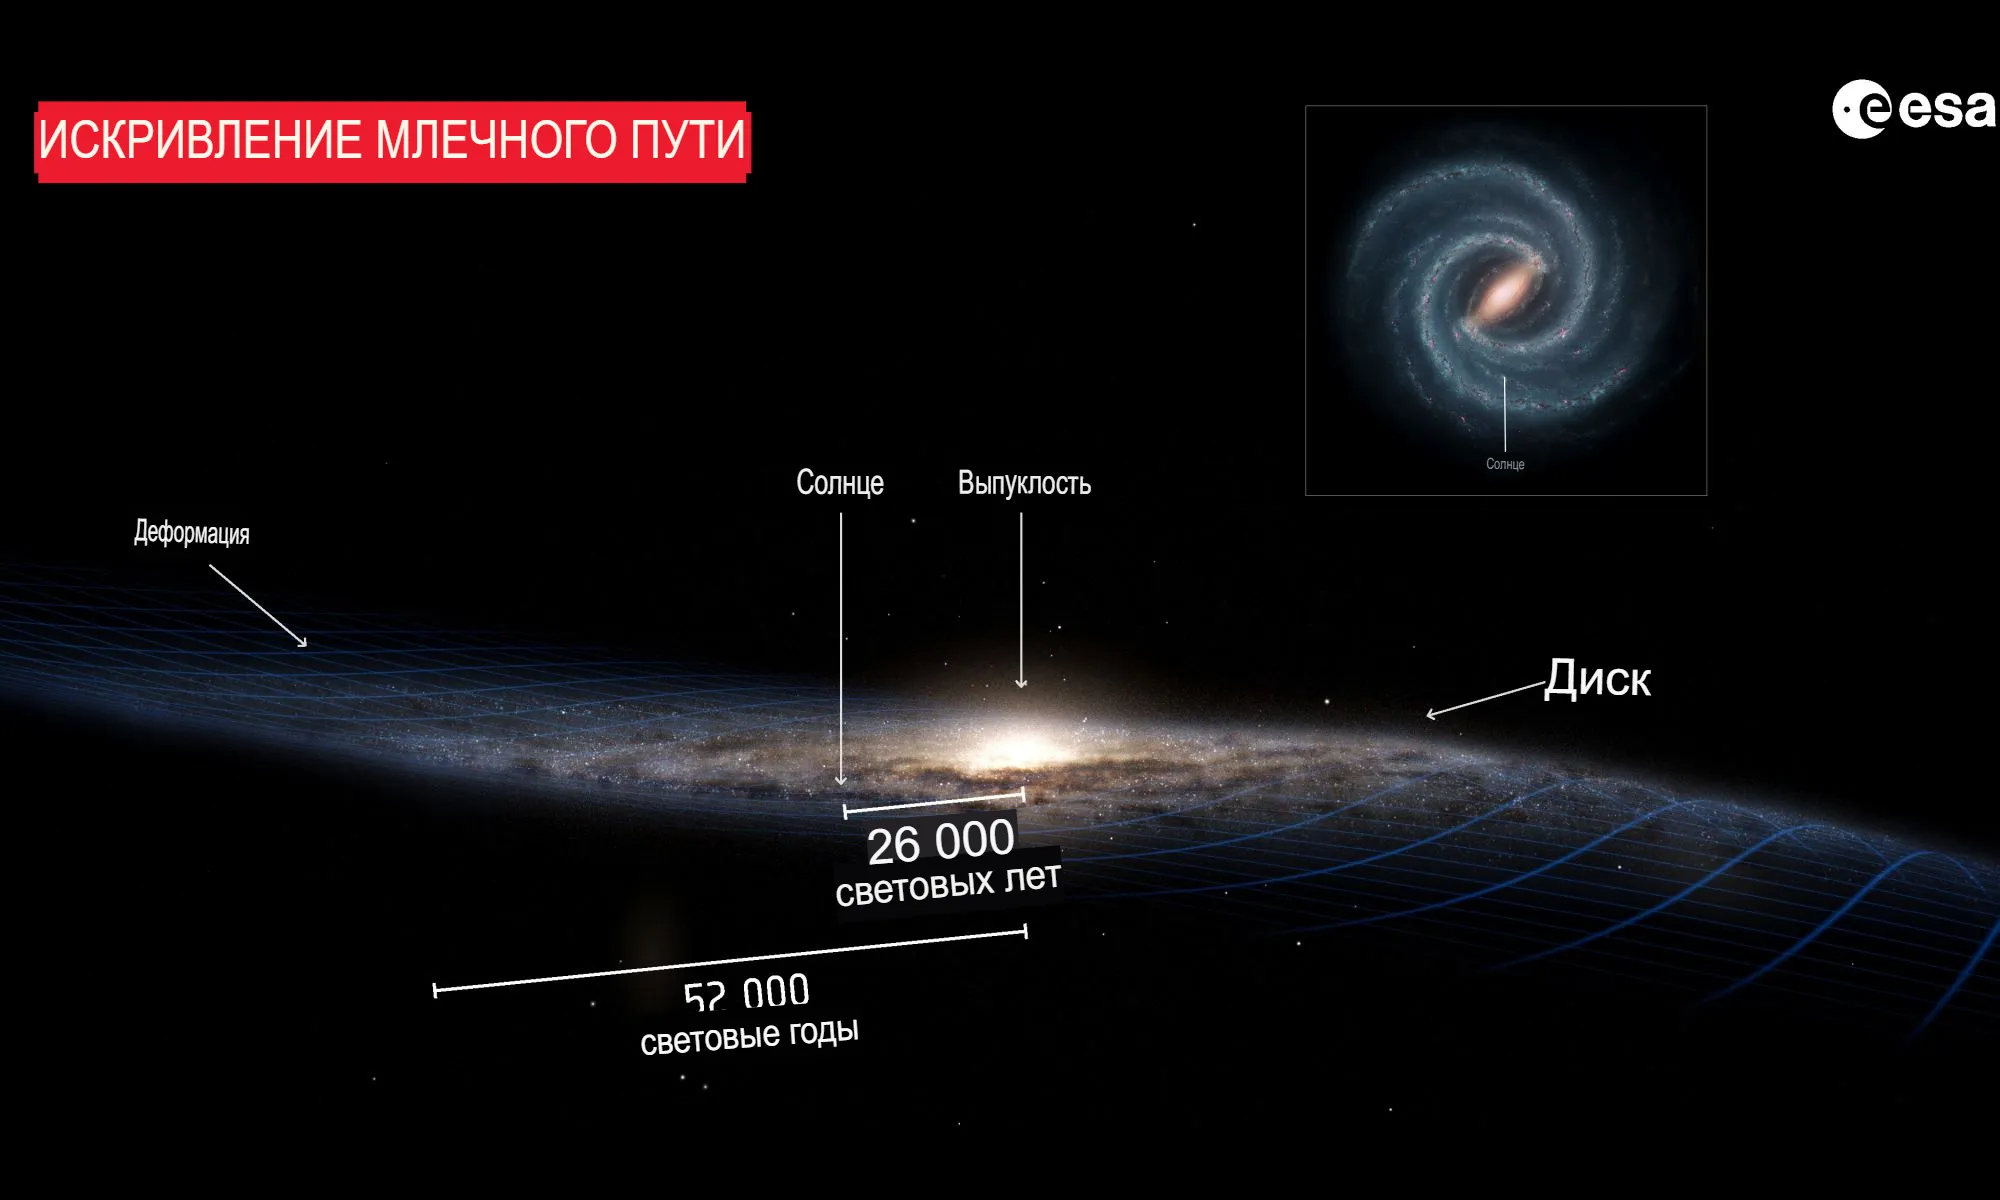 Диск нашей галактики Млечный Путь искривлен и это вызывает вопросы